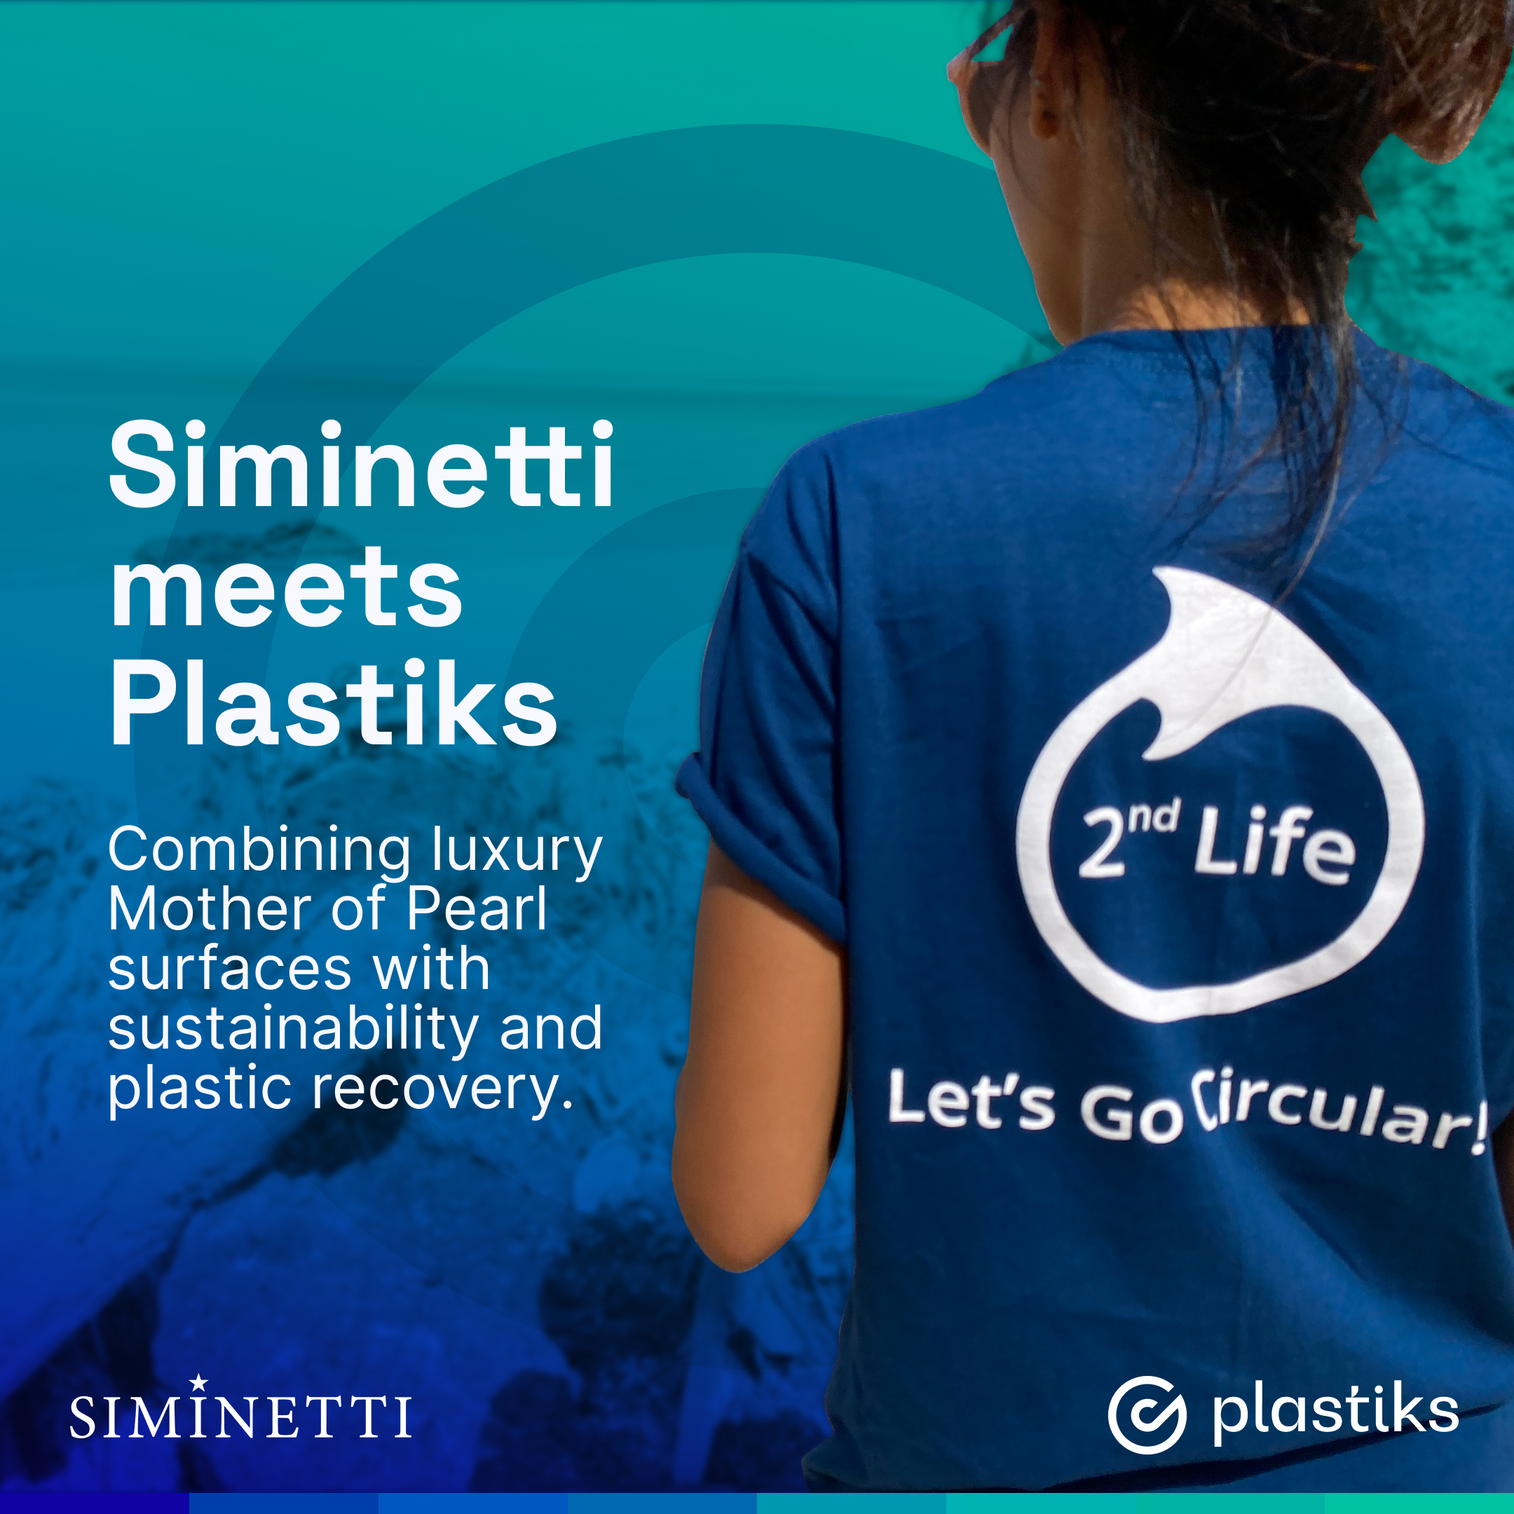 Siminetti meets Plastiks